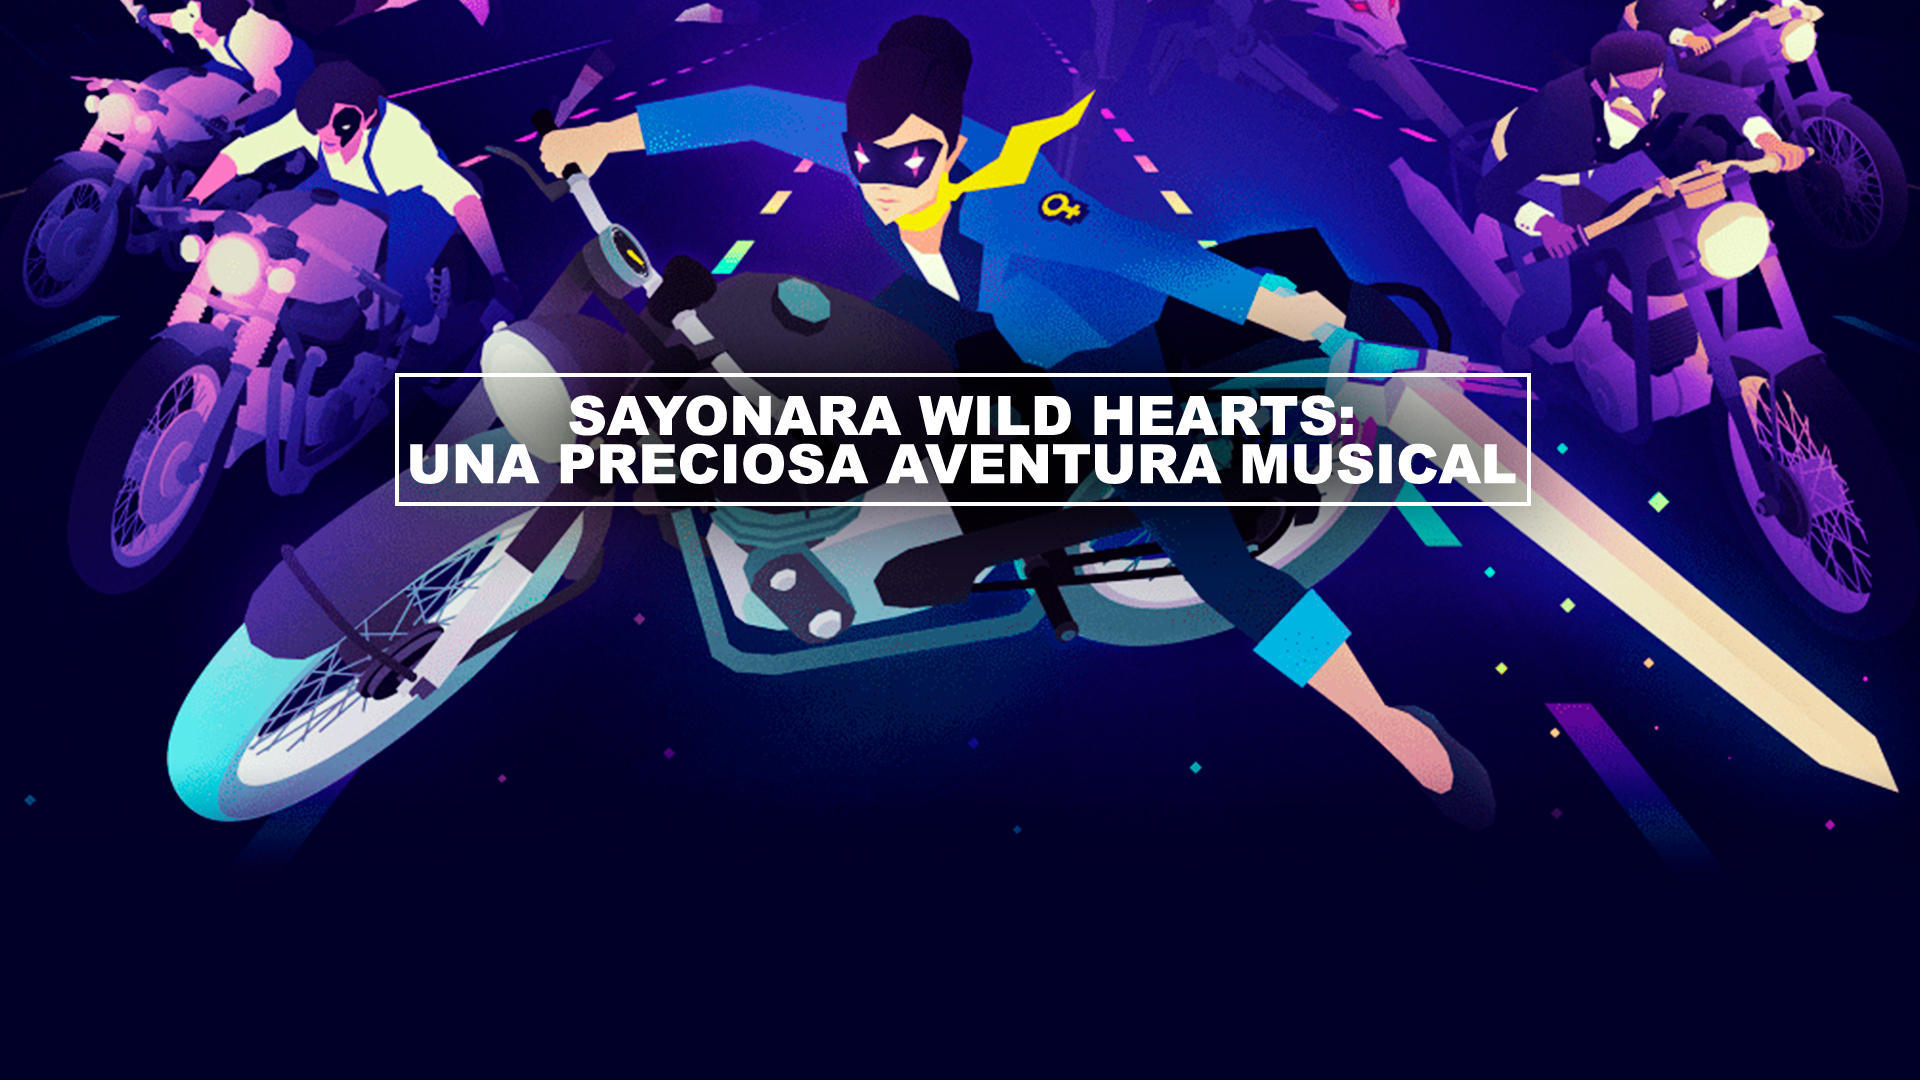 Sayonara Wild Hearts: Una preciosa aventura musical